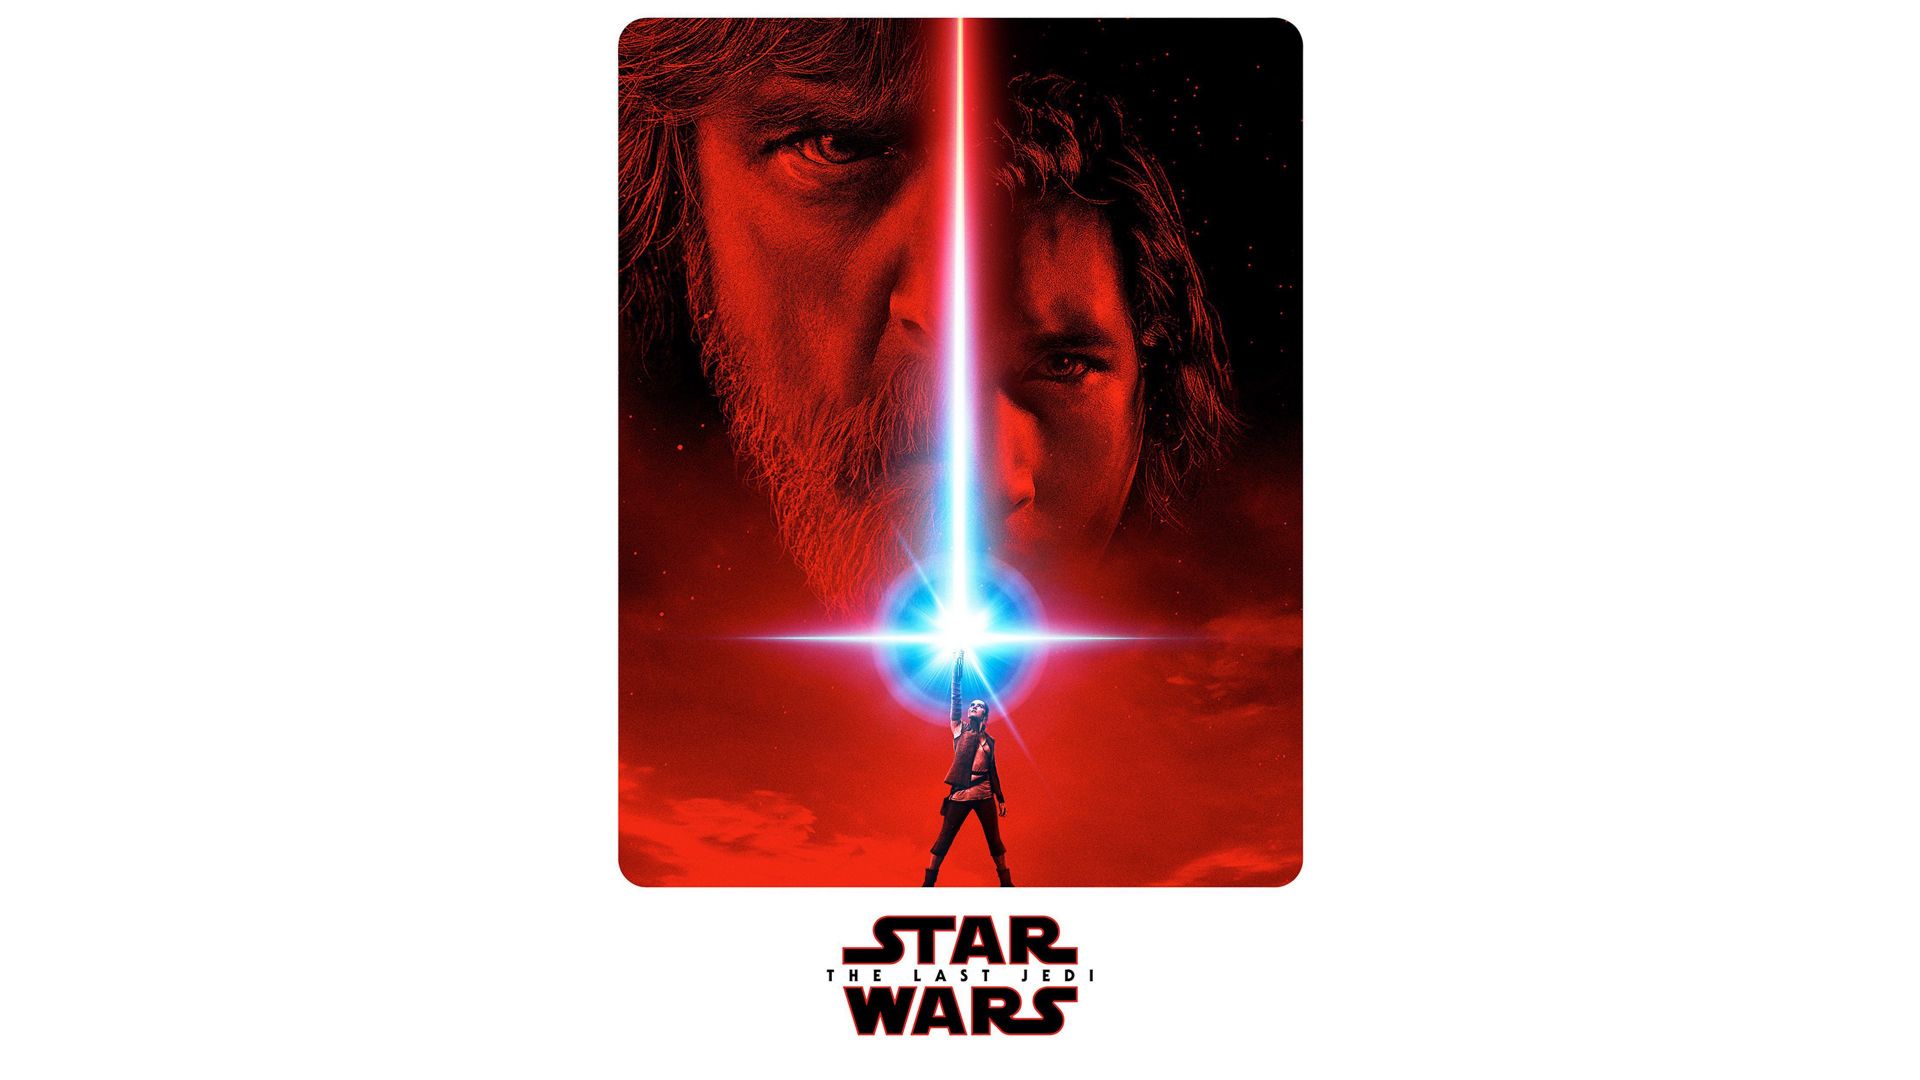 Wallpaper Movie, star wars, Star wars: The Last Jedi